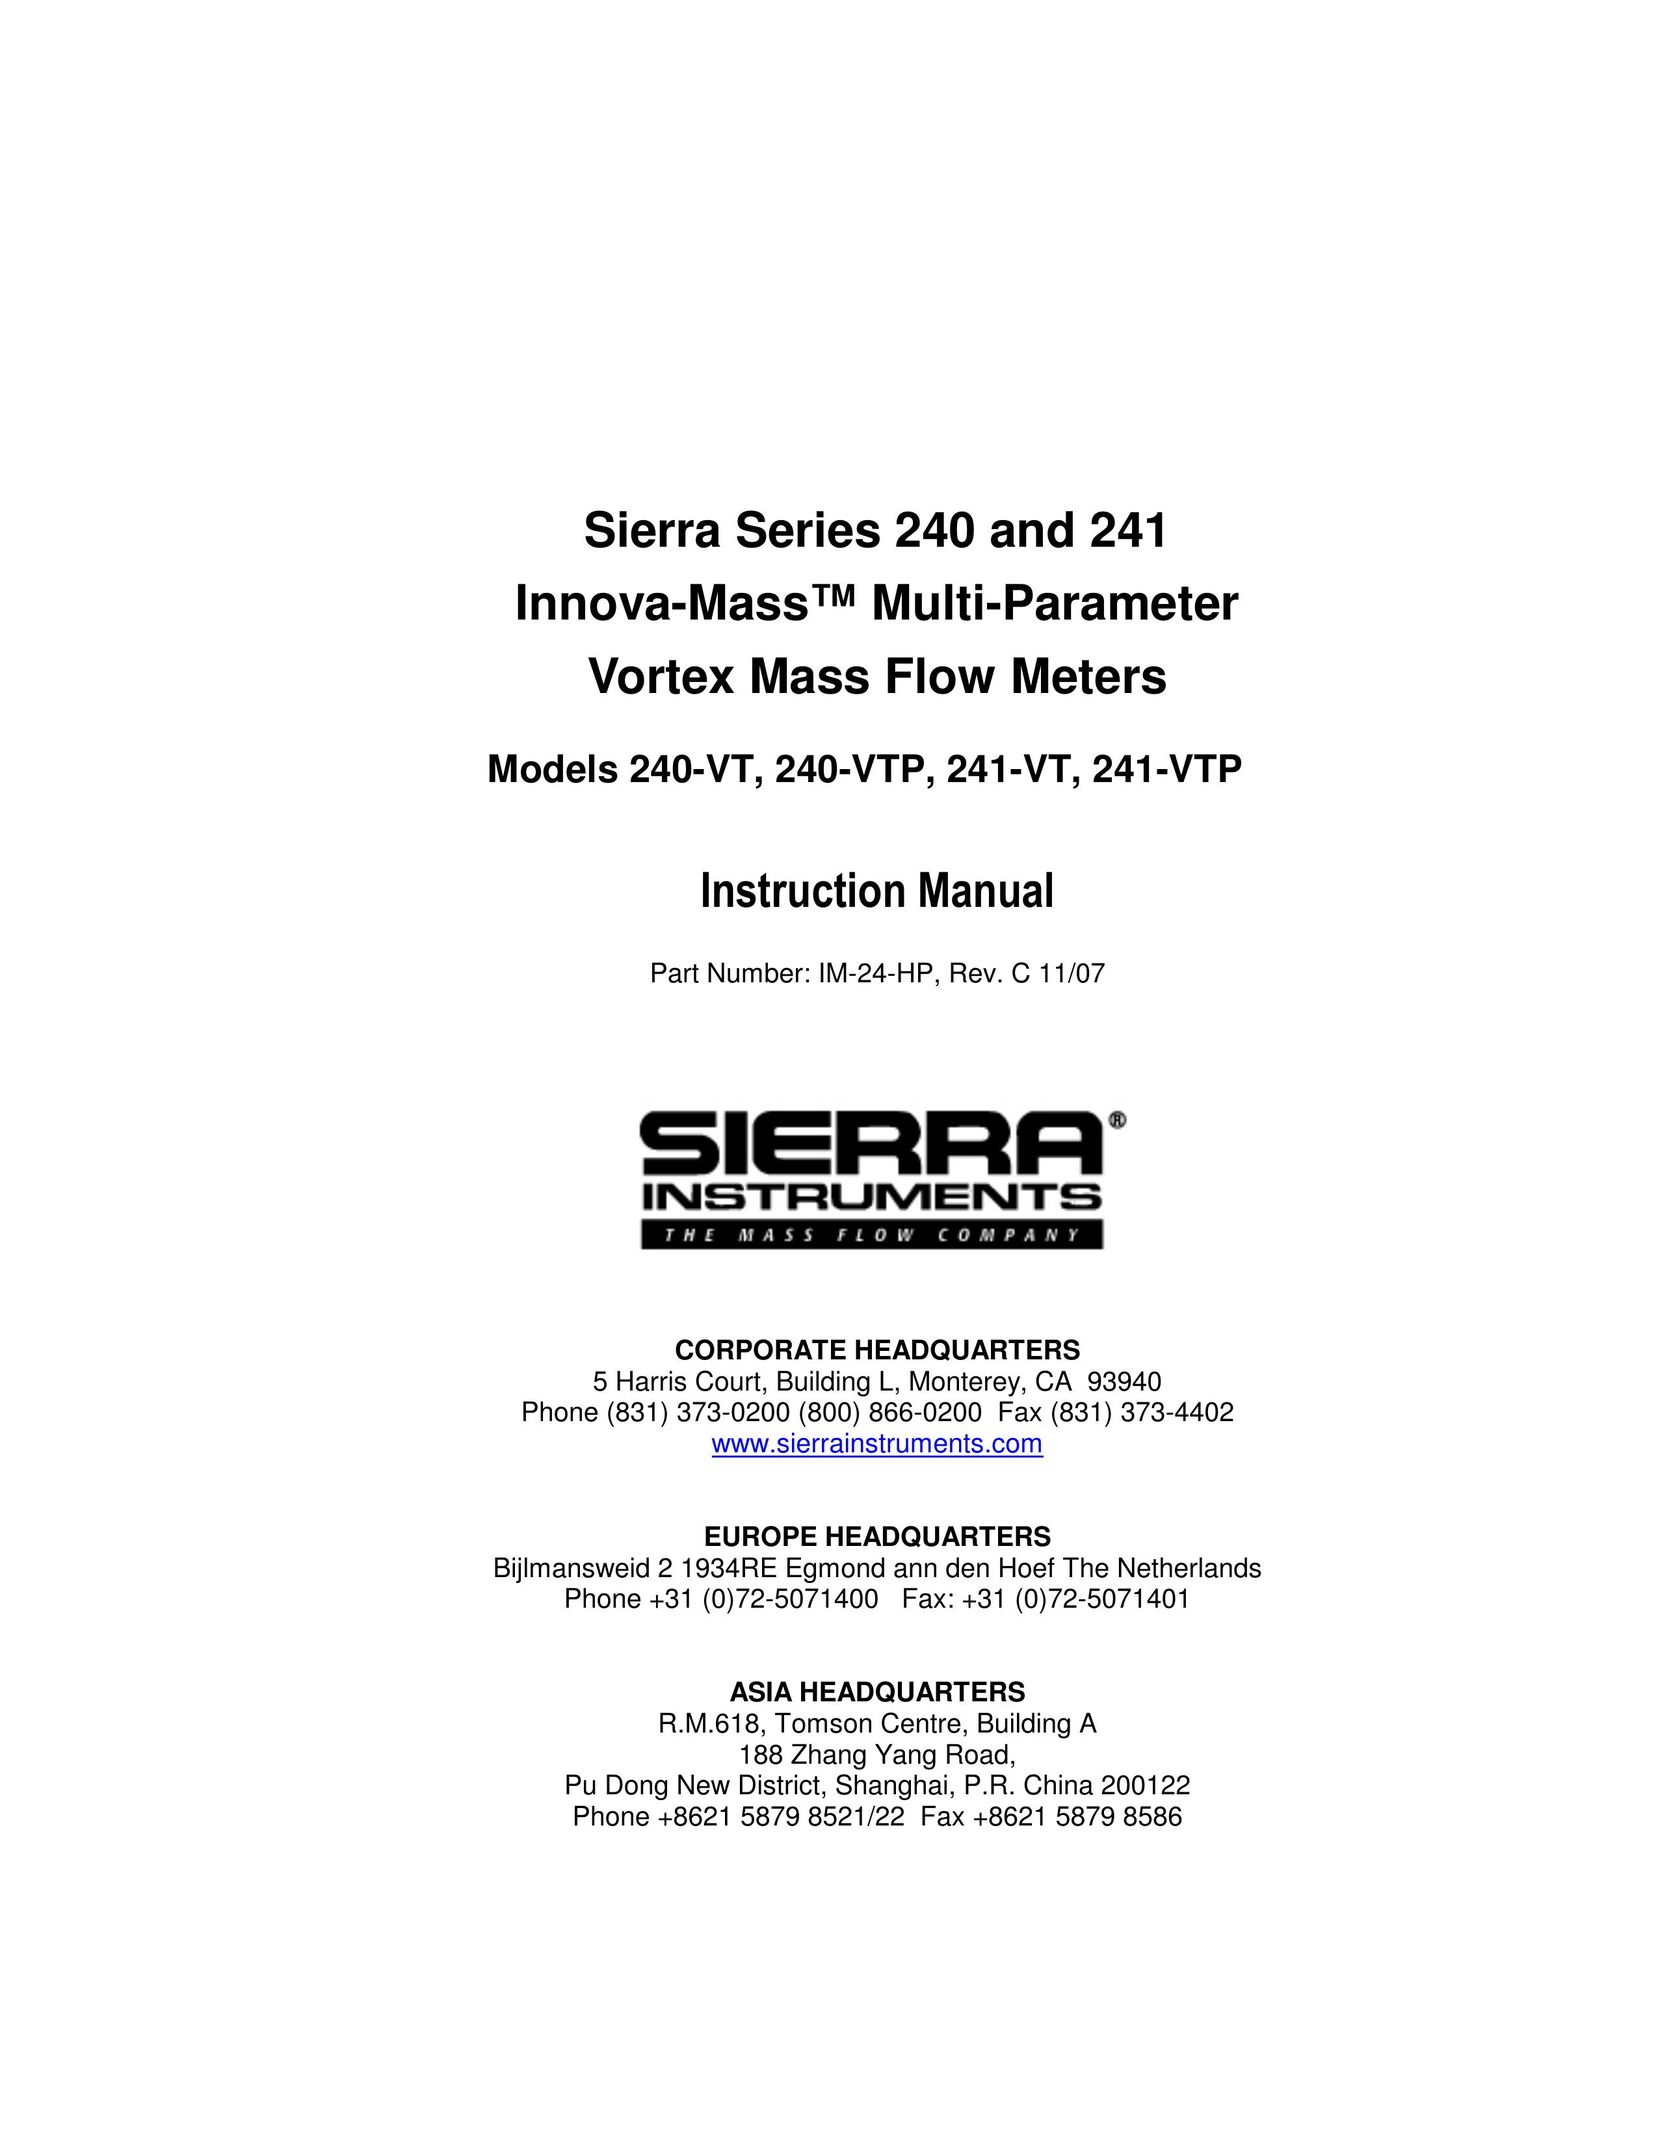 Sierra 240-VTP Network Router User Manual